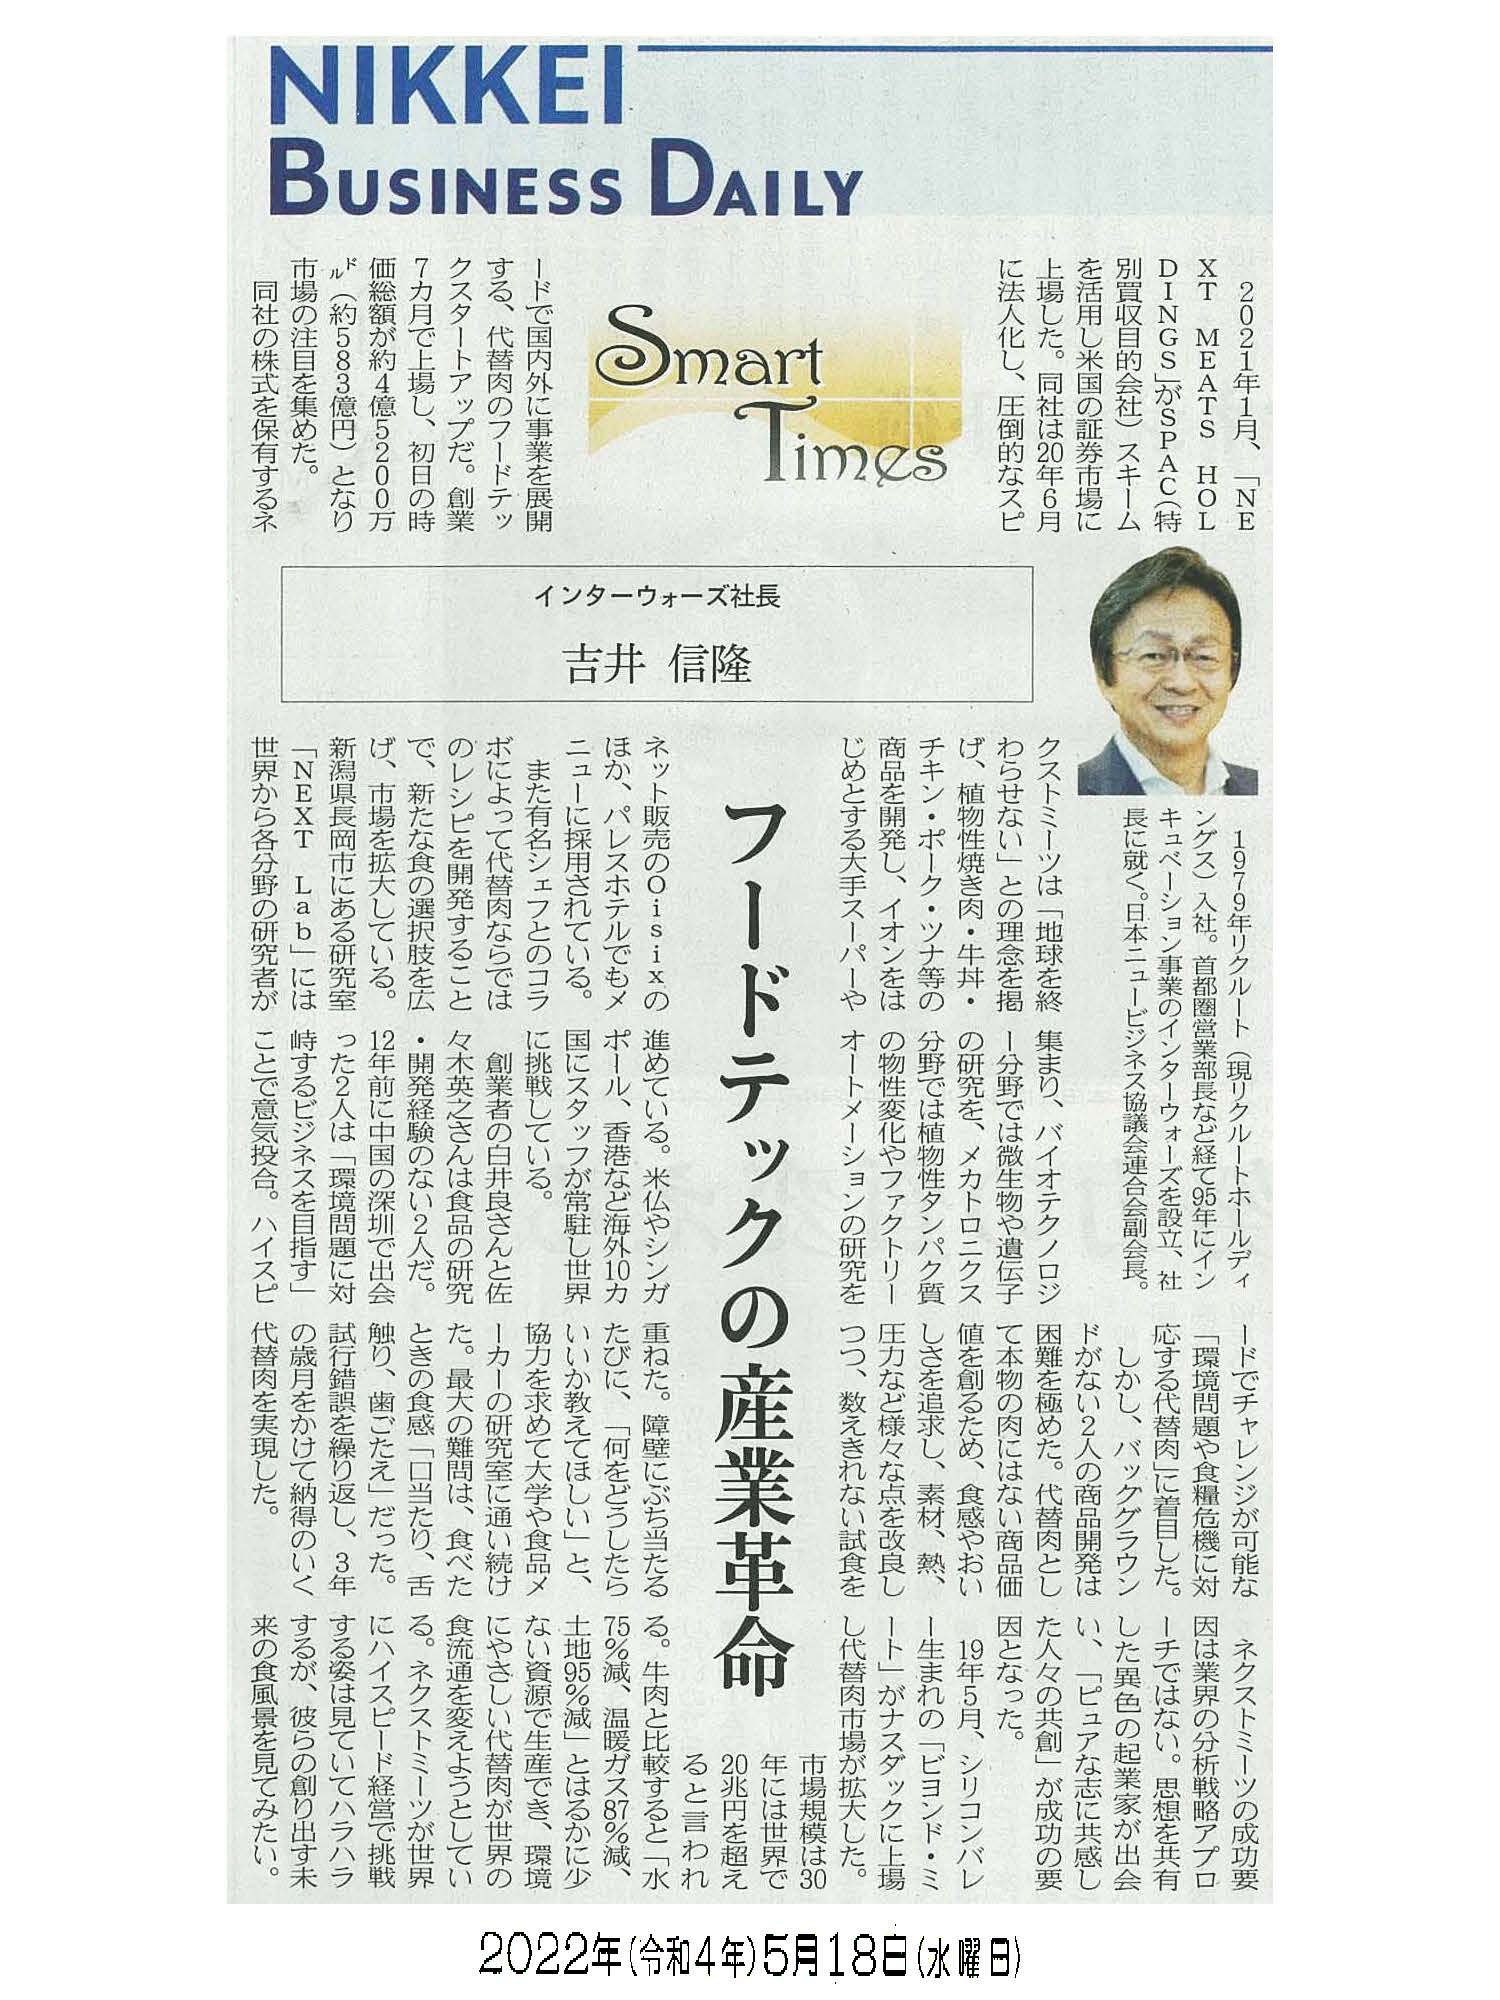 日経産業新聞 Smart Times「フードテックの産業革命」